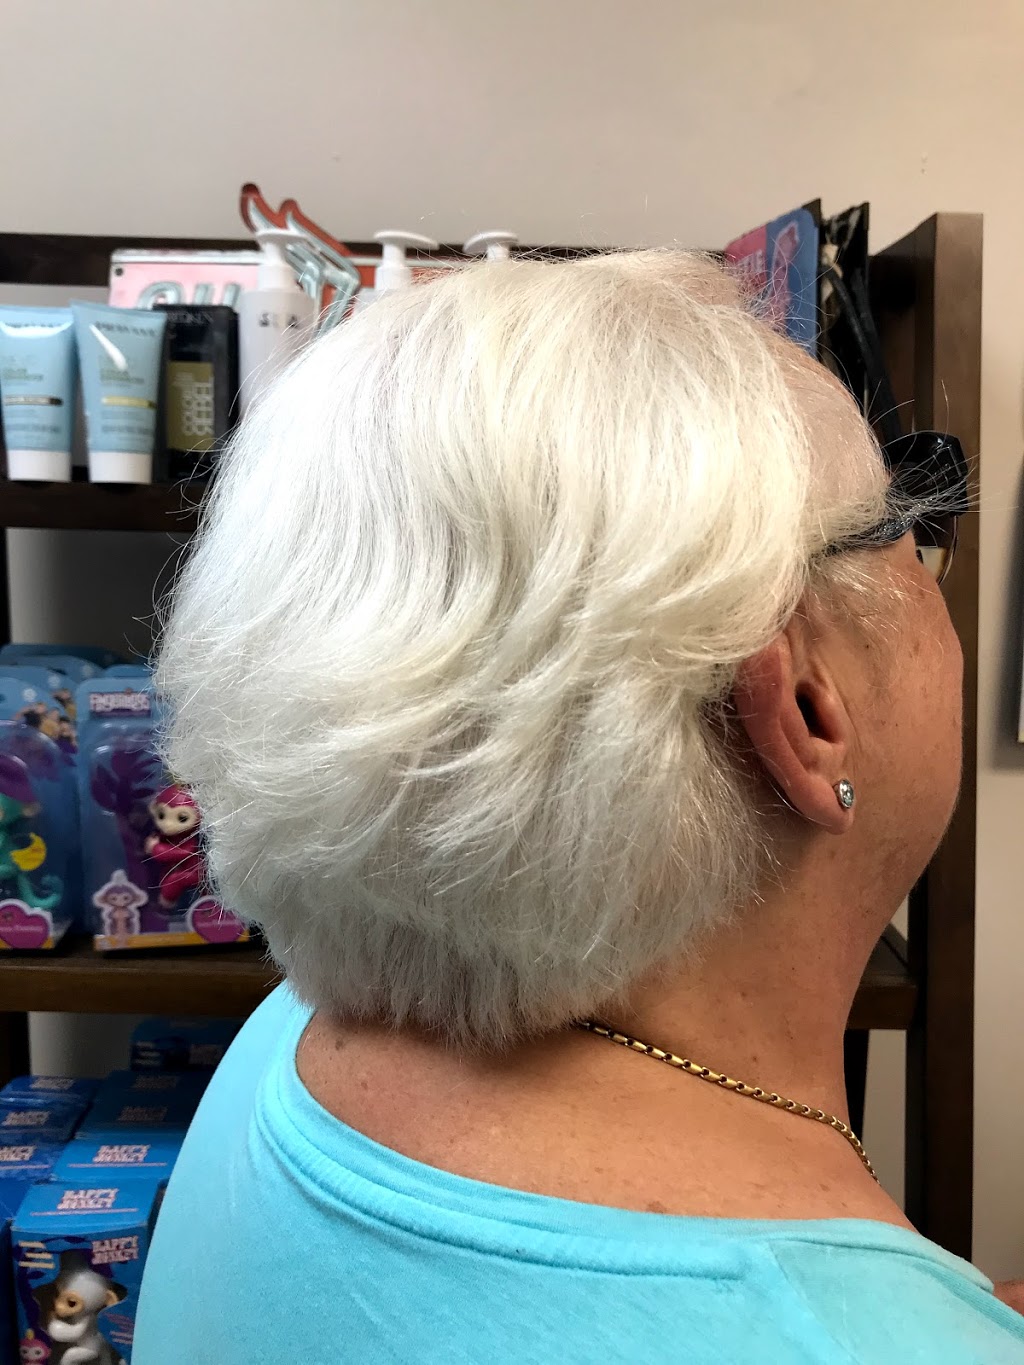 Aviation Blondes Hair Salon | 2870 Roosevelt Blvd, Clearwater, FL 33760 | Phone: (727) 585-4247